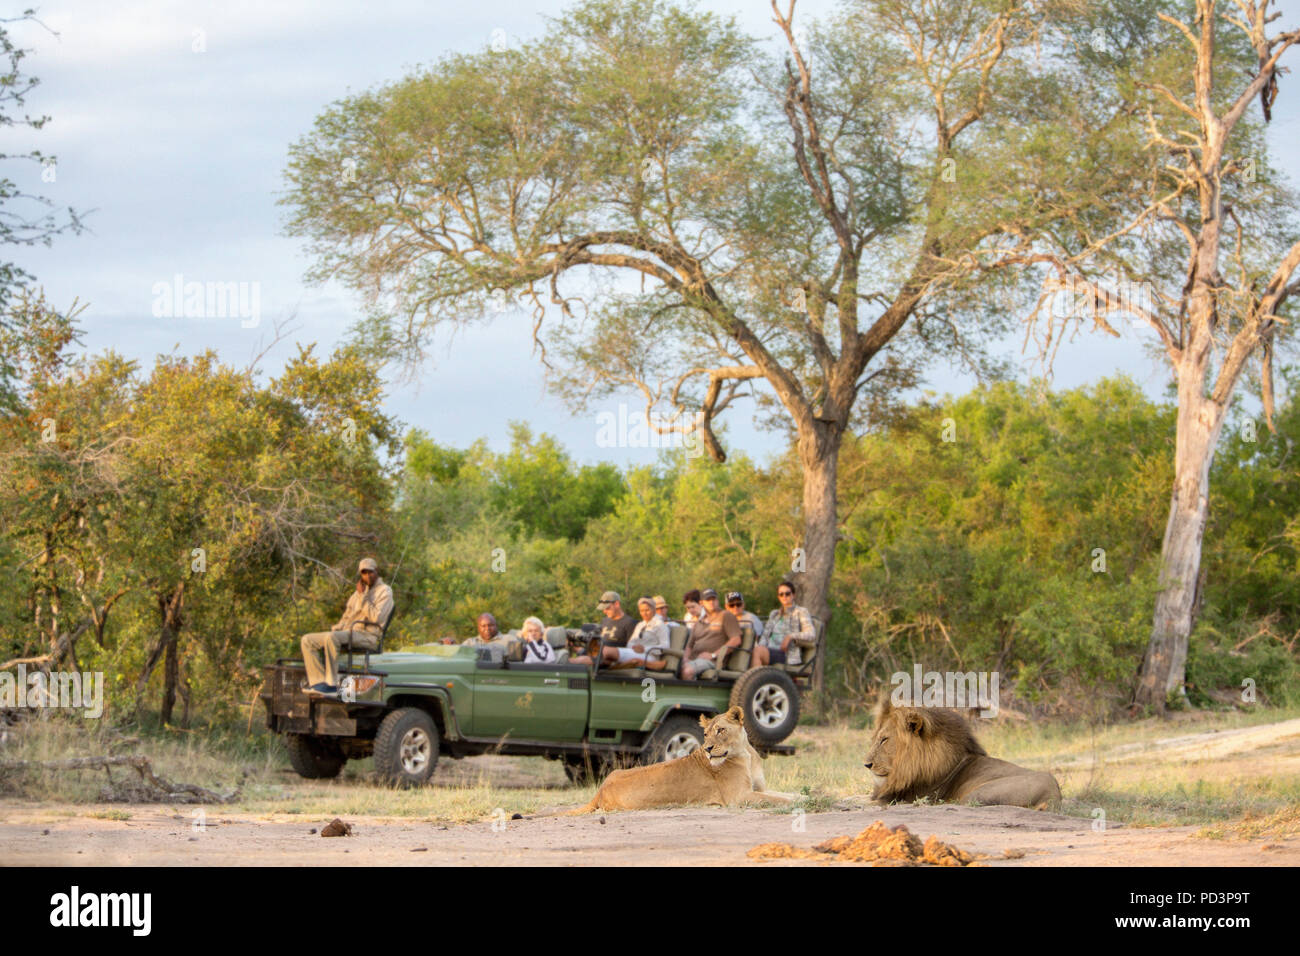 Vista panorámica de los turistas en una partida abierta conduzca el vehículo viendo un león macho y hembra (Panthera leo) yaciendo juntos Foto de stock